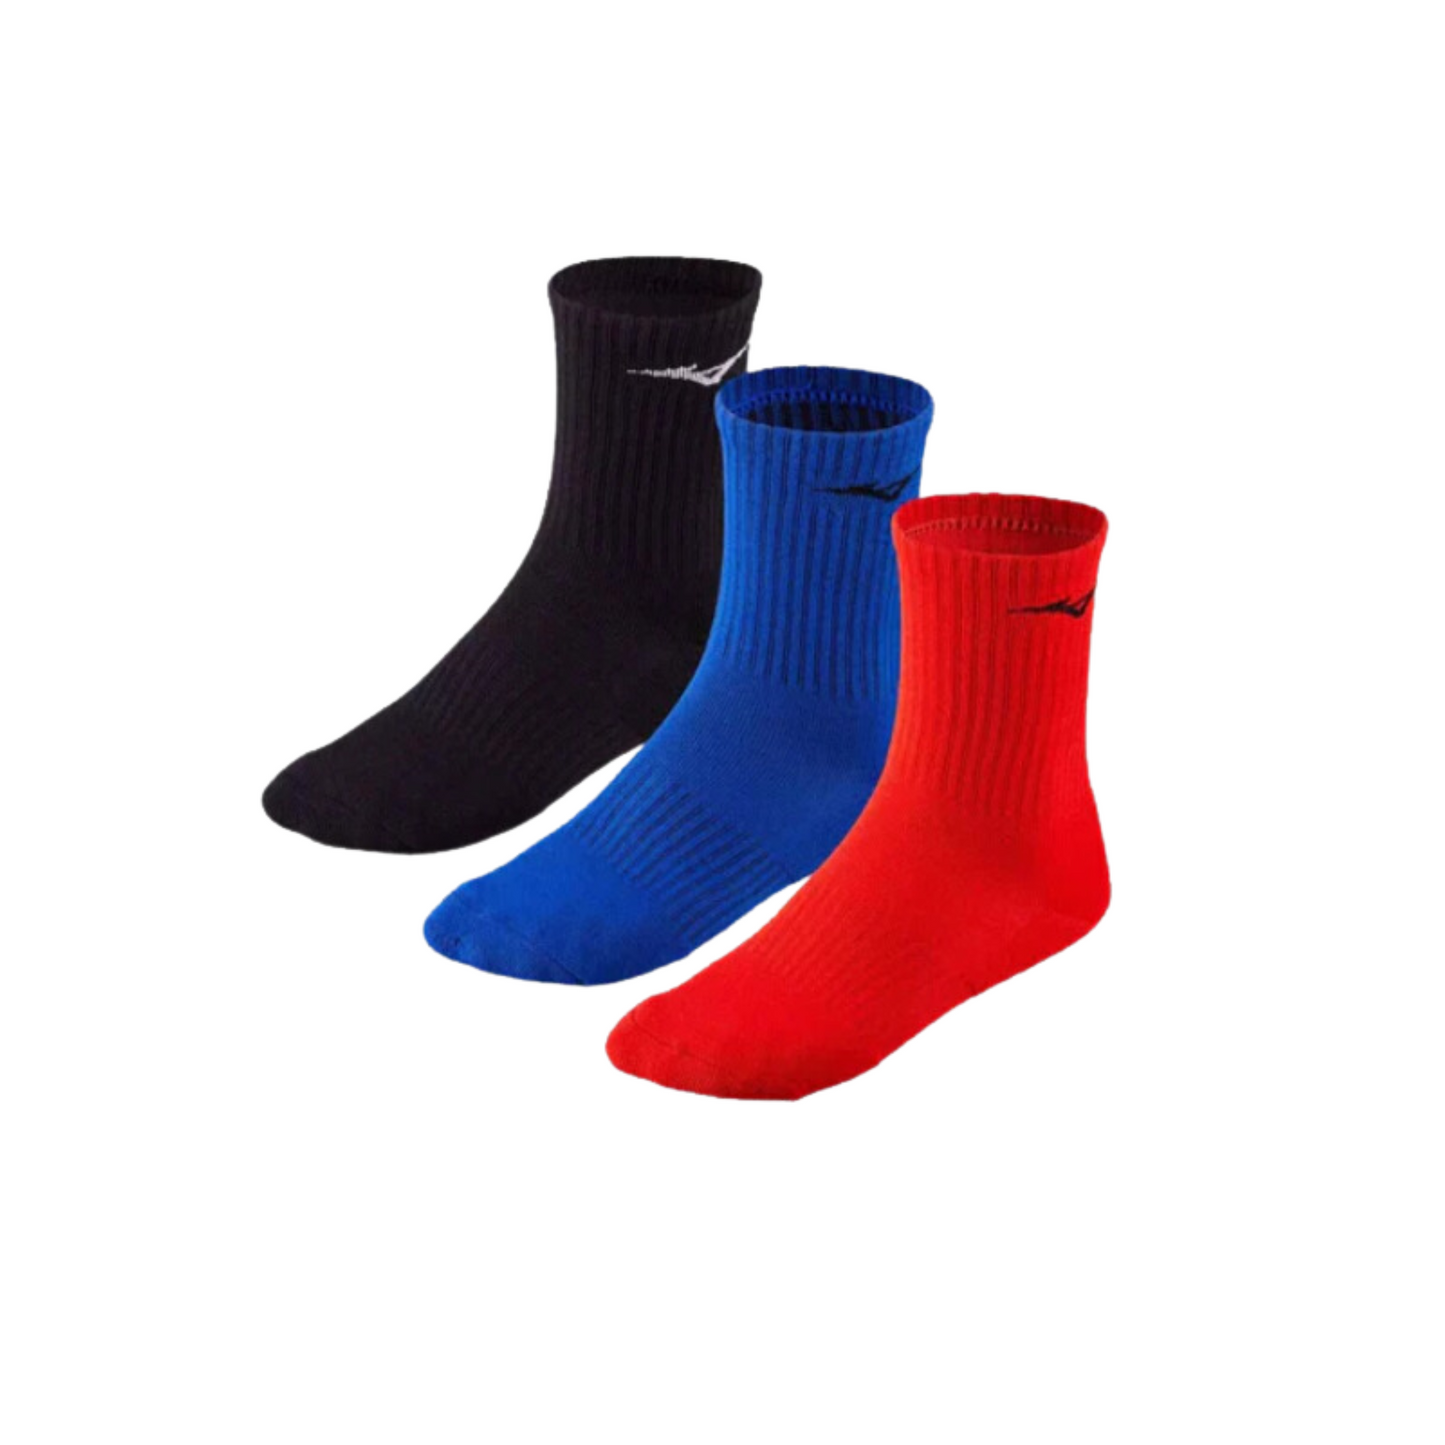 mizuno calcetines rojo/negro/azul 3pp varios